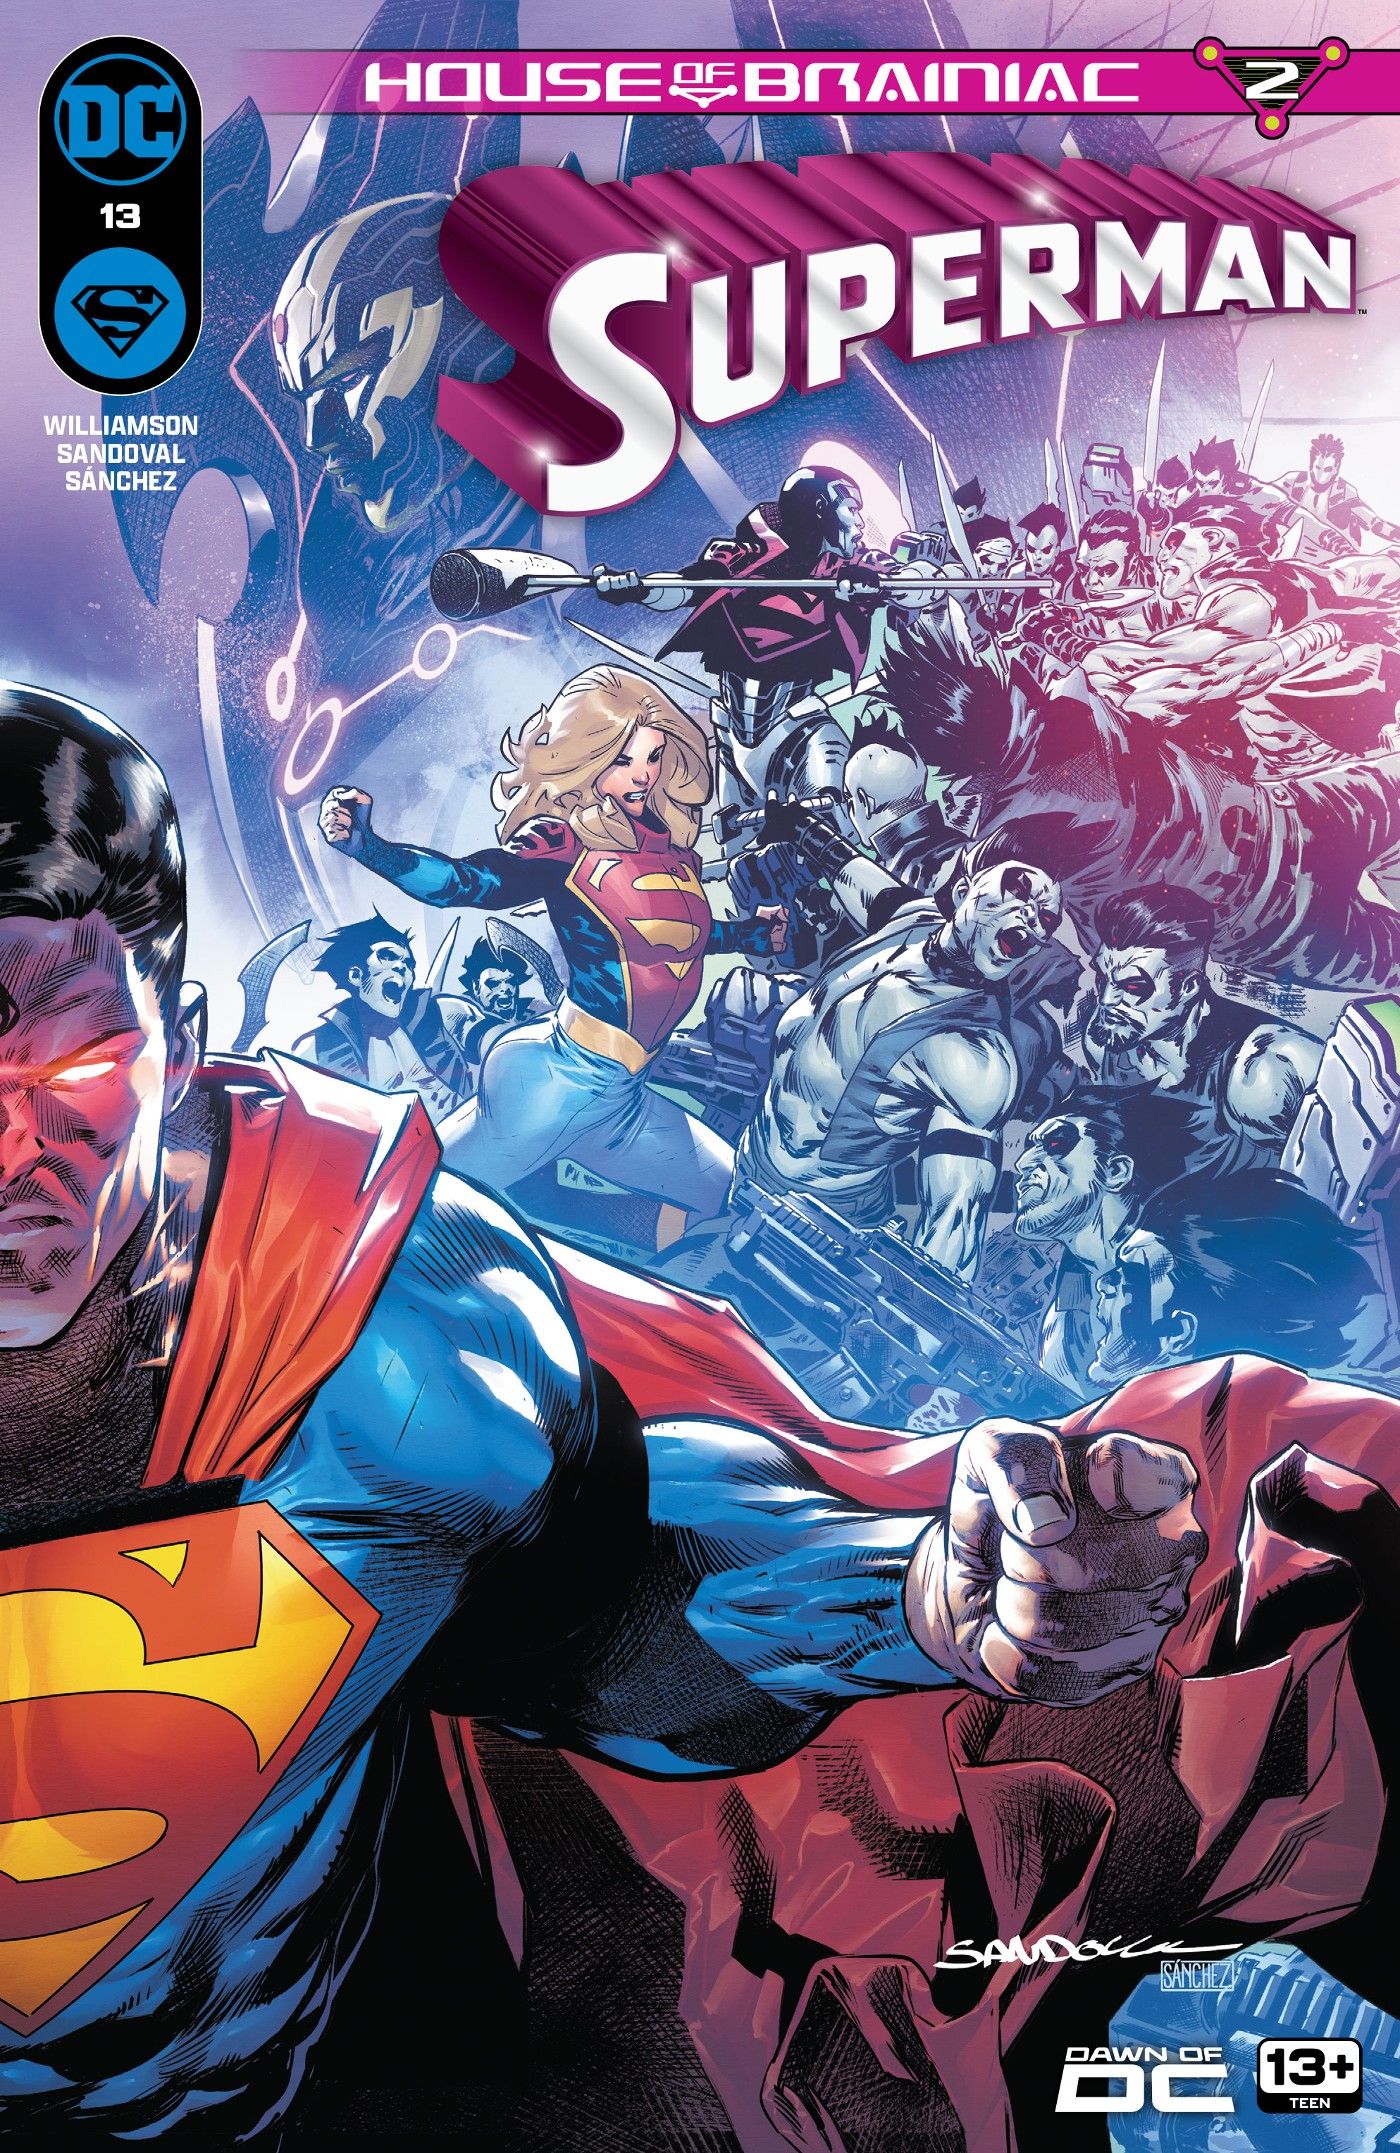 Capa principal do Superman 13: Superman olhando com olhos vermelhos brilhantes.  Atrás dele, Supergirl e Steel lutam contra Czarnianos.